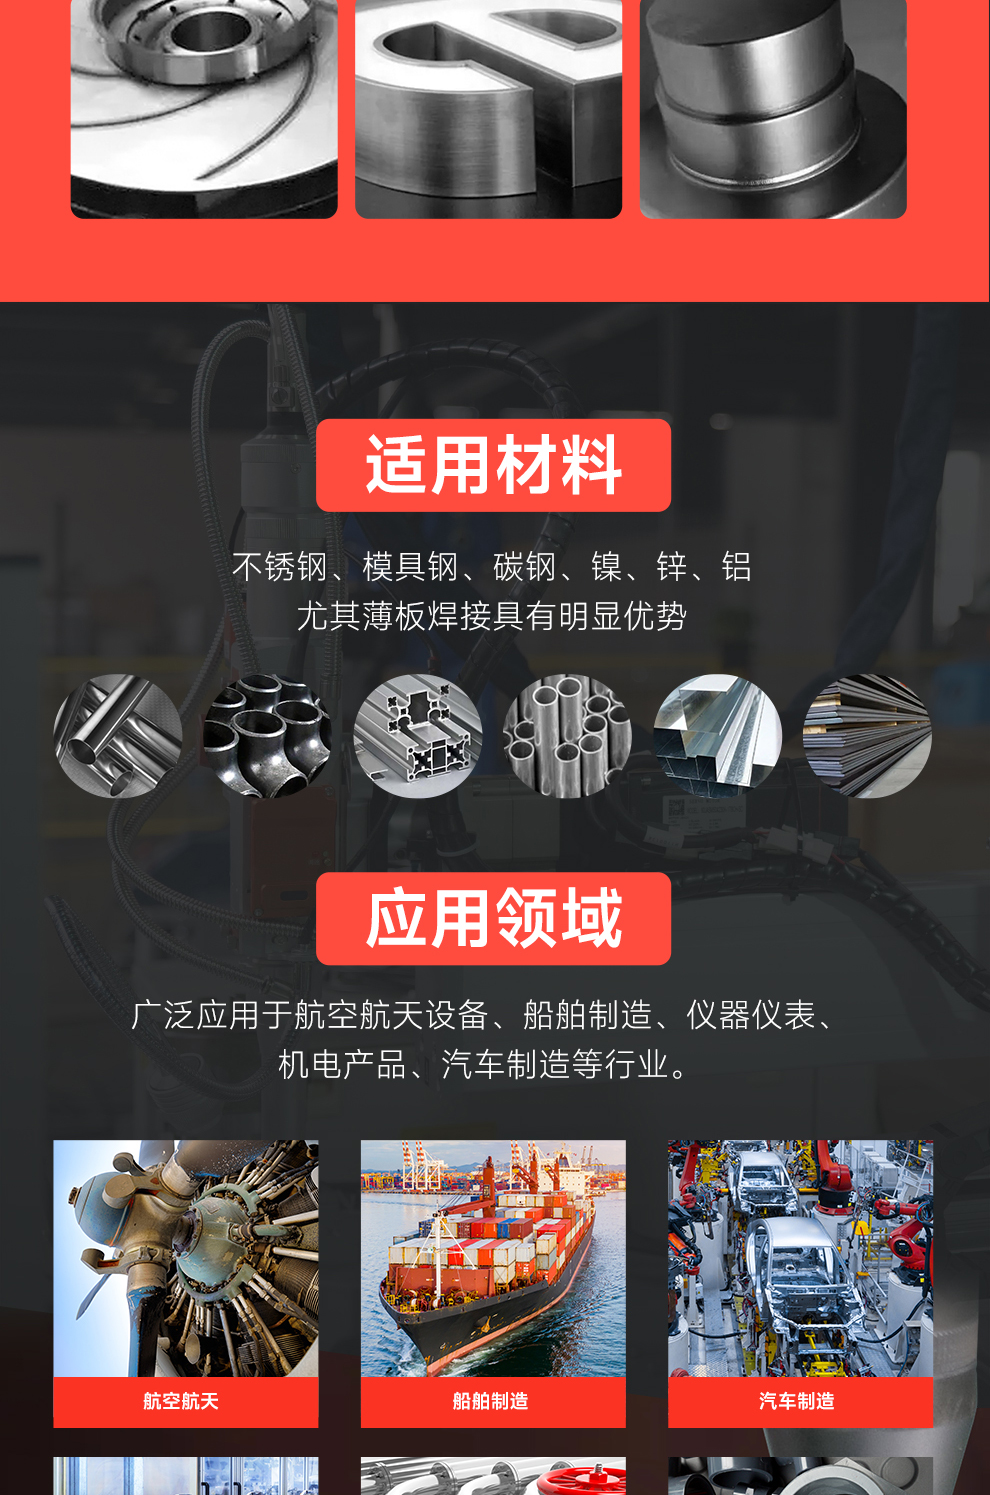 【待审】内贸-平台自动激光焊接机--详情O0520牛力_05.jpg